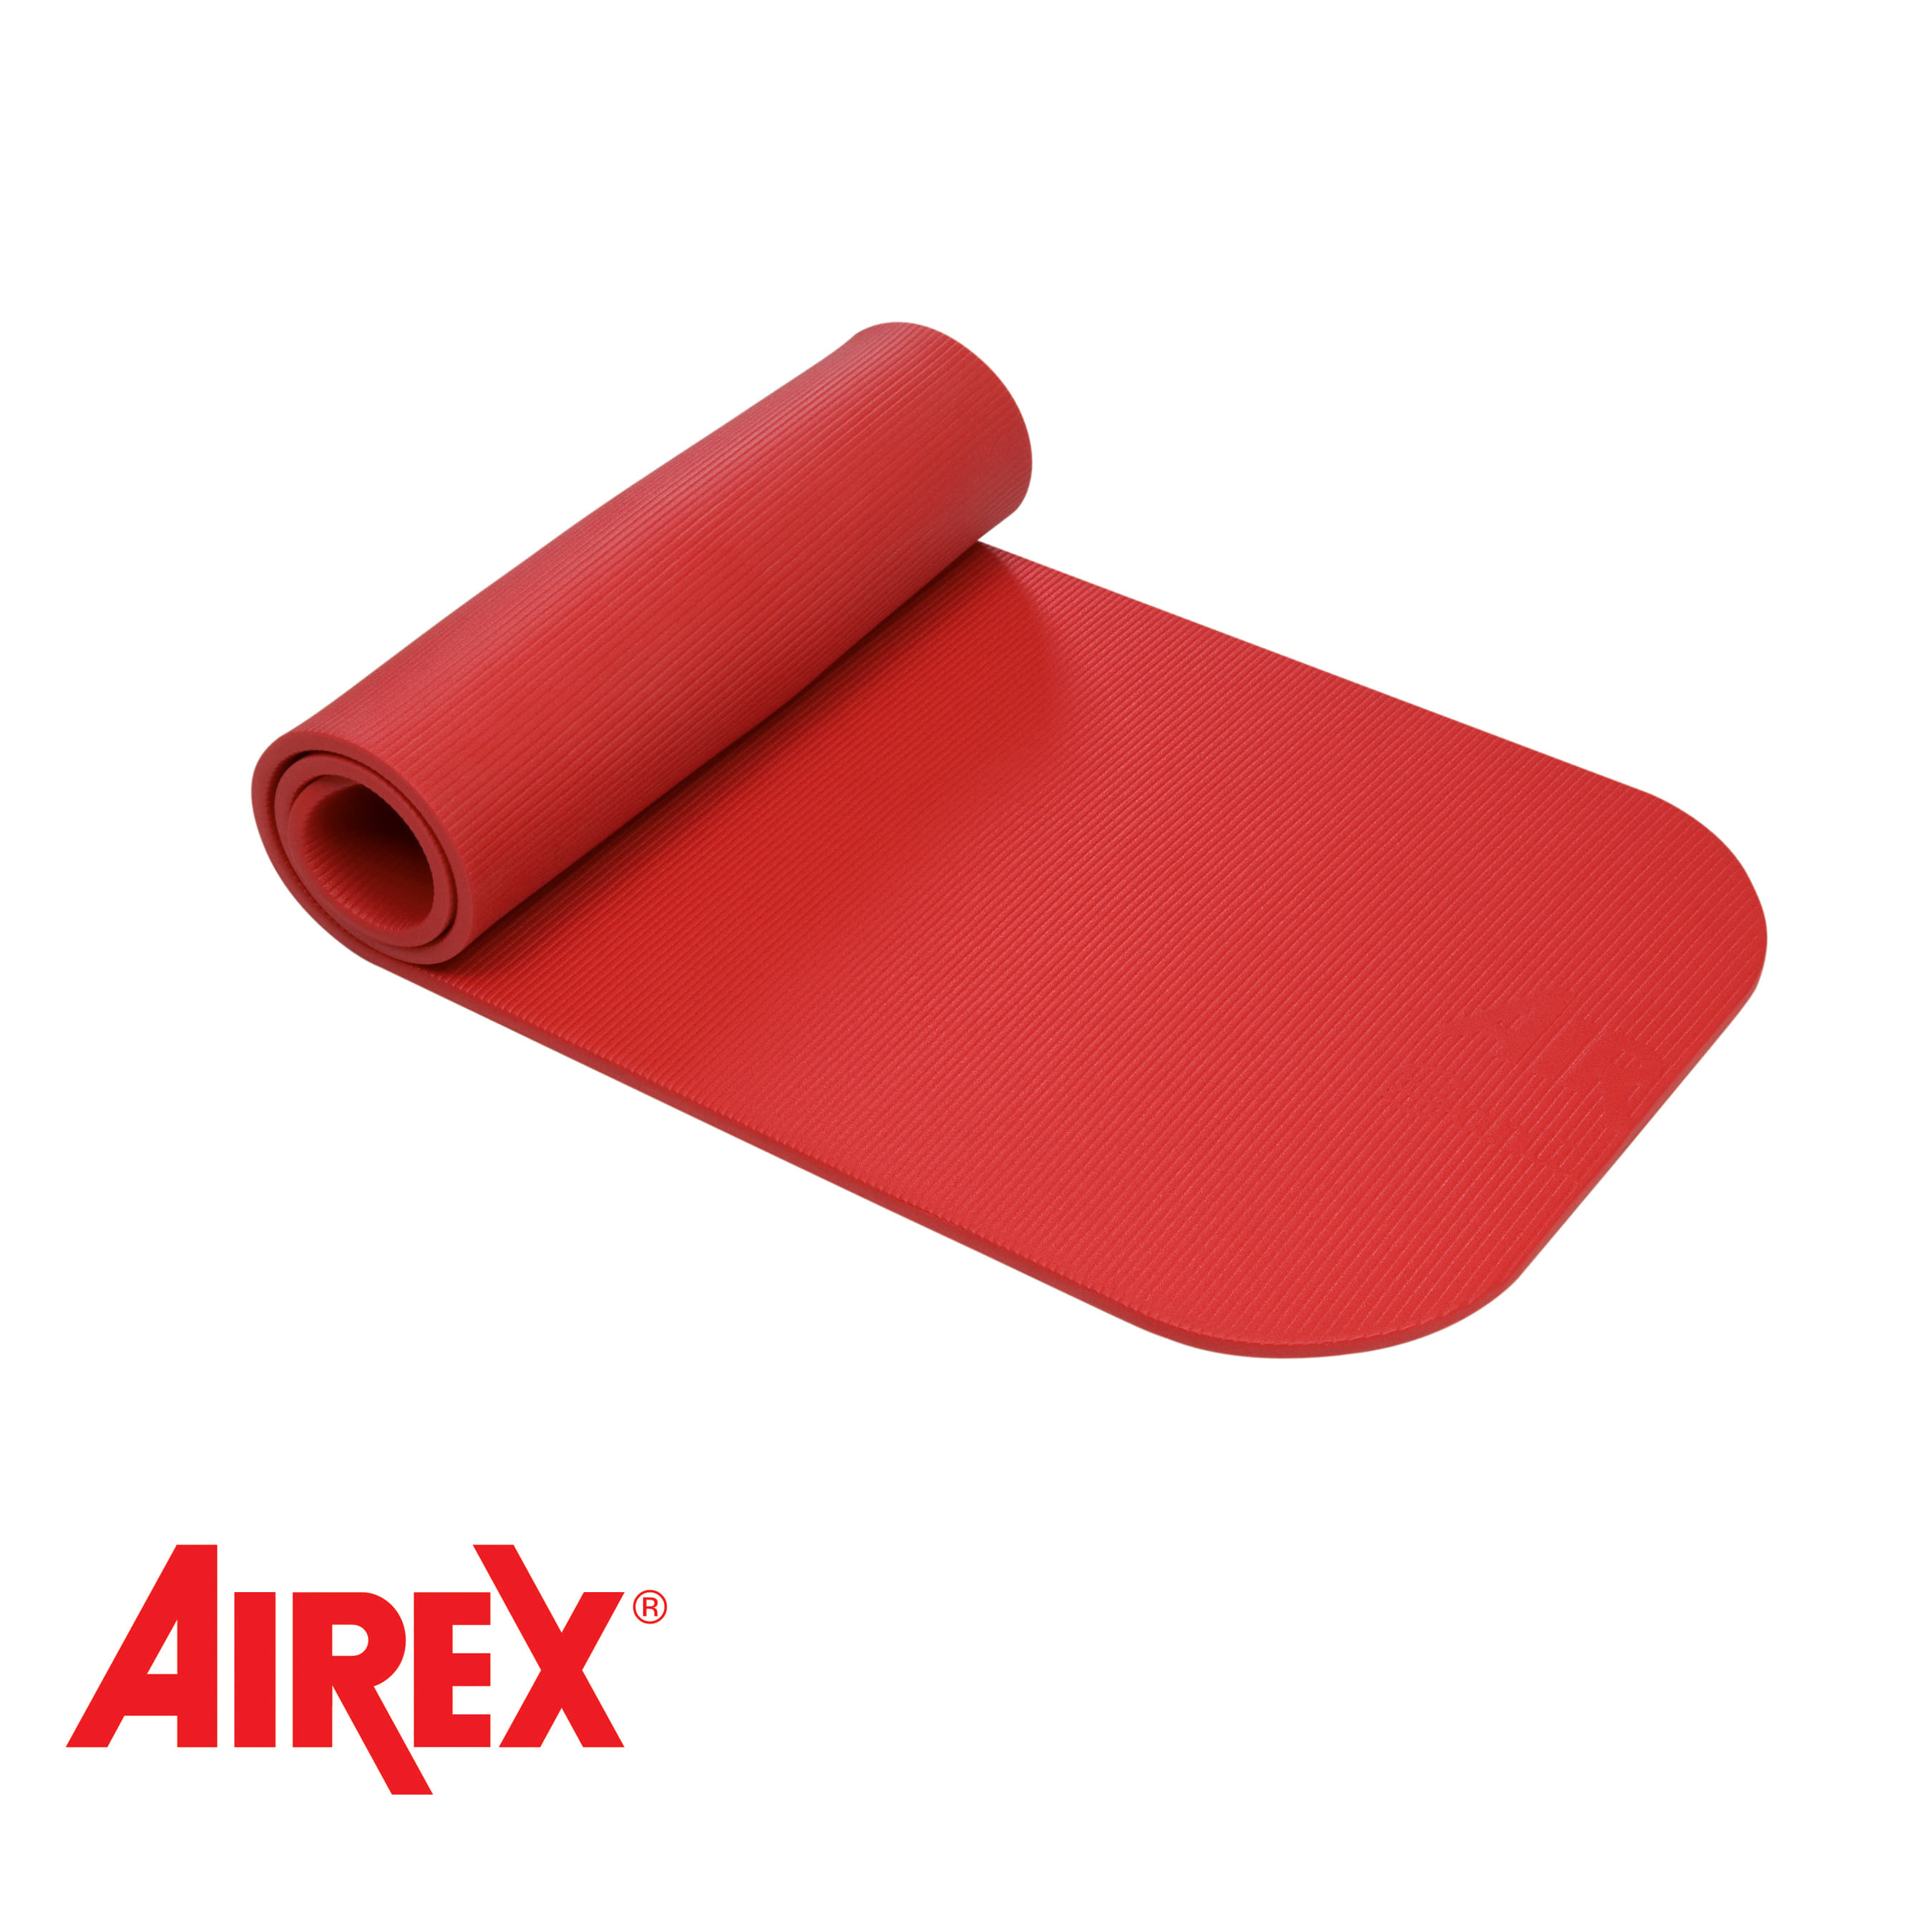 Airex® Coronalla 185 Mat Red